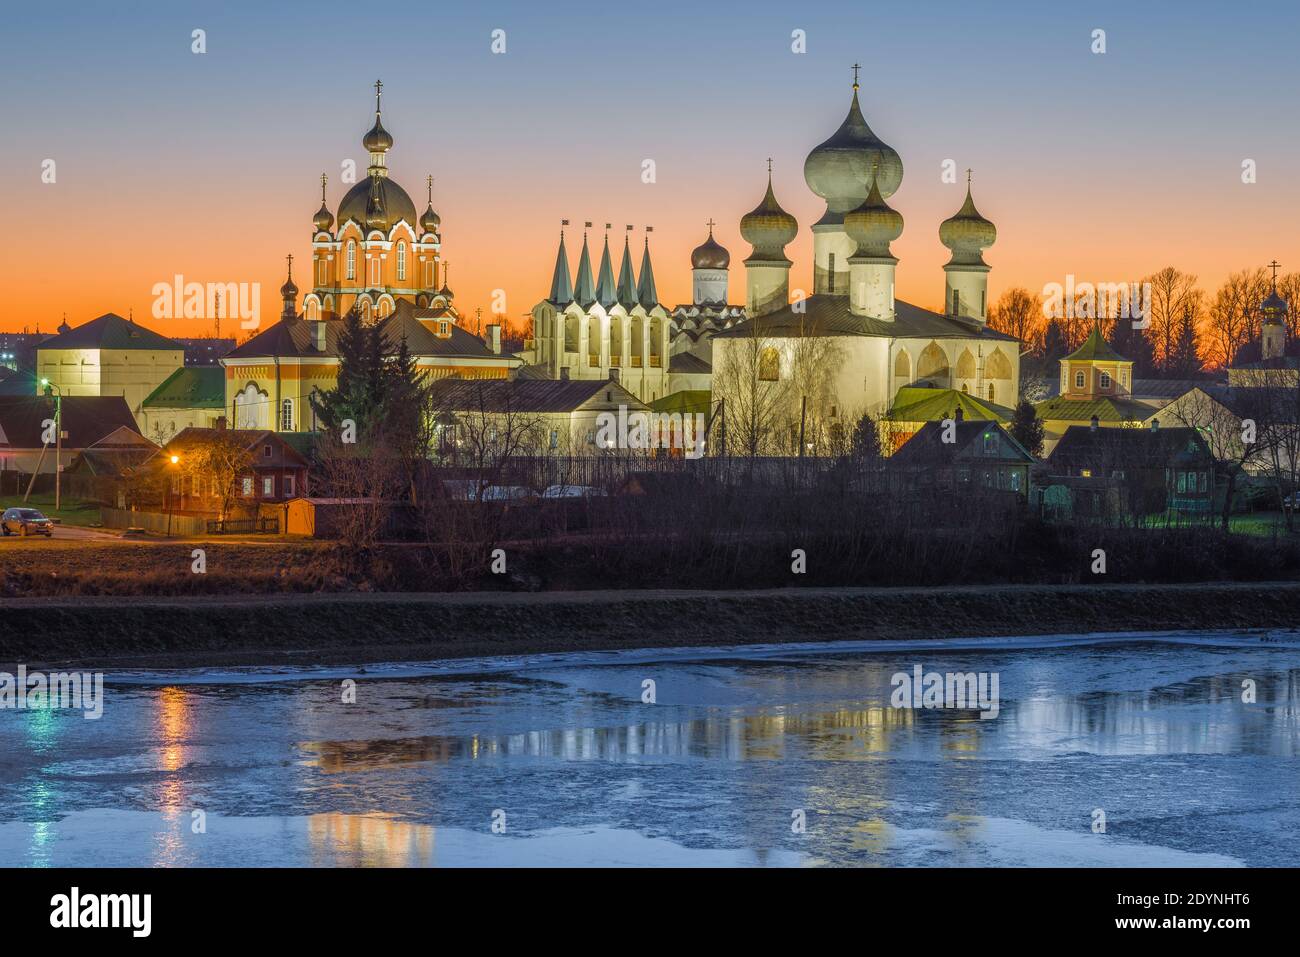 Blick auf die Tempel des Tichvin Theotokos Himmelfahrt-Klosters im Dezember Sonnenuntergang. Leningrad, Russland Stockfoto